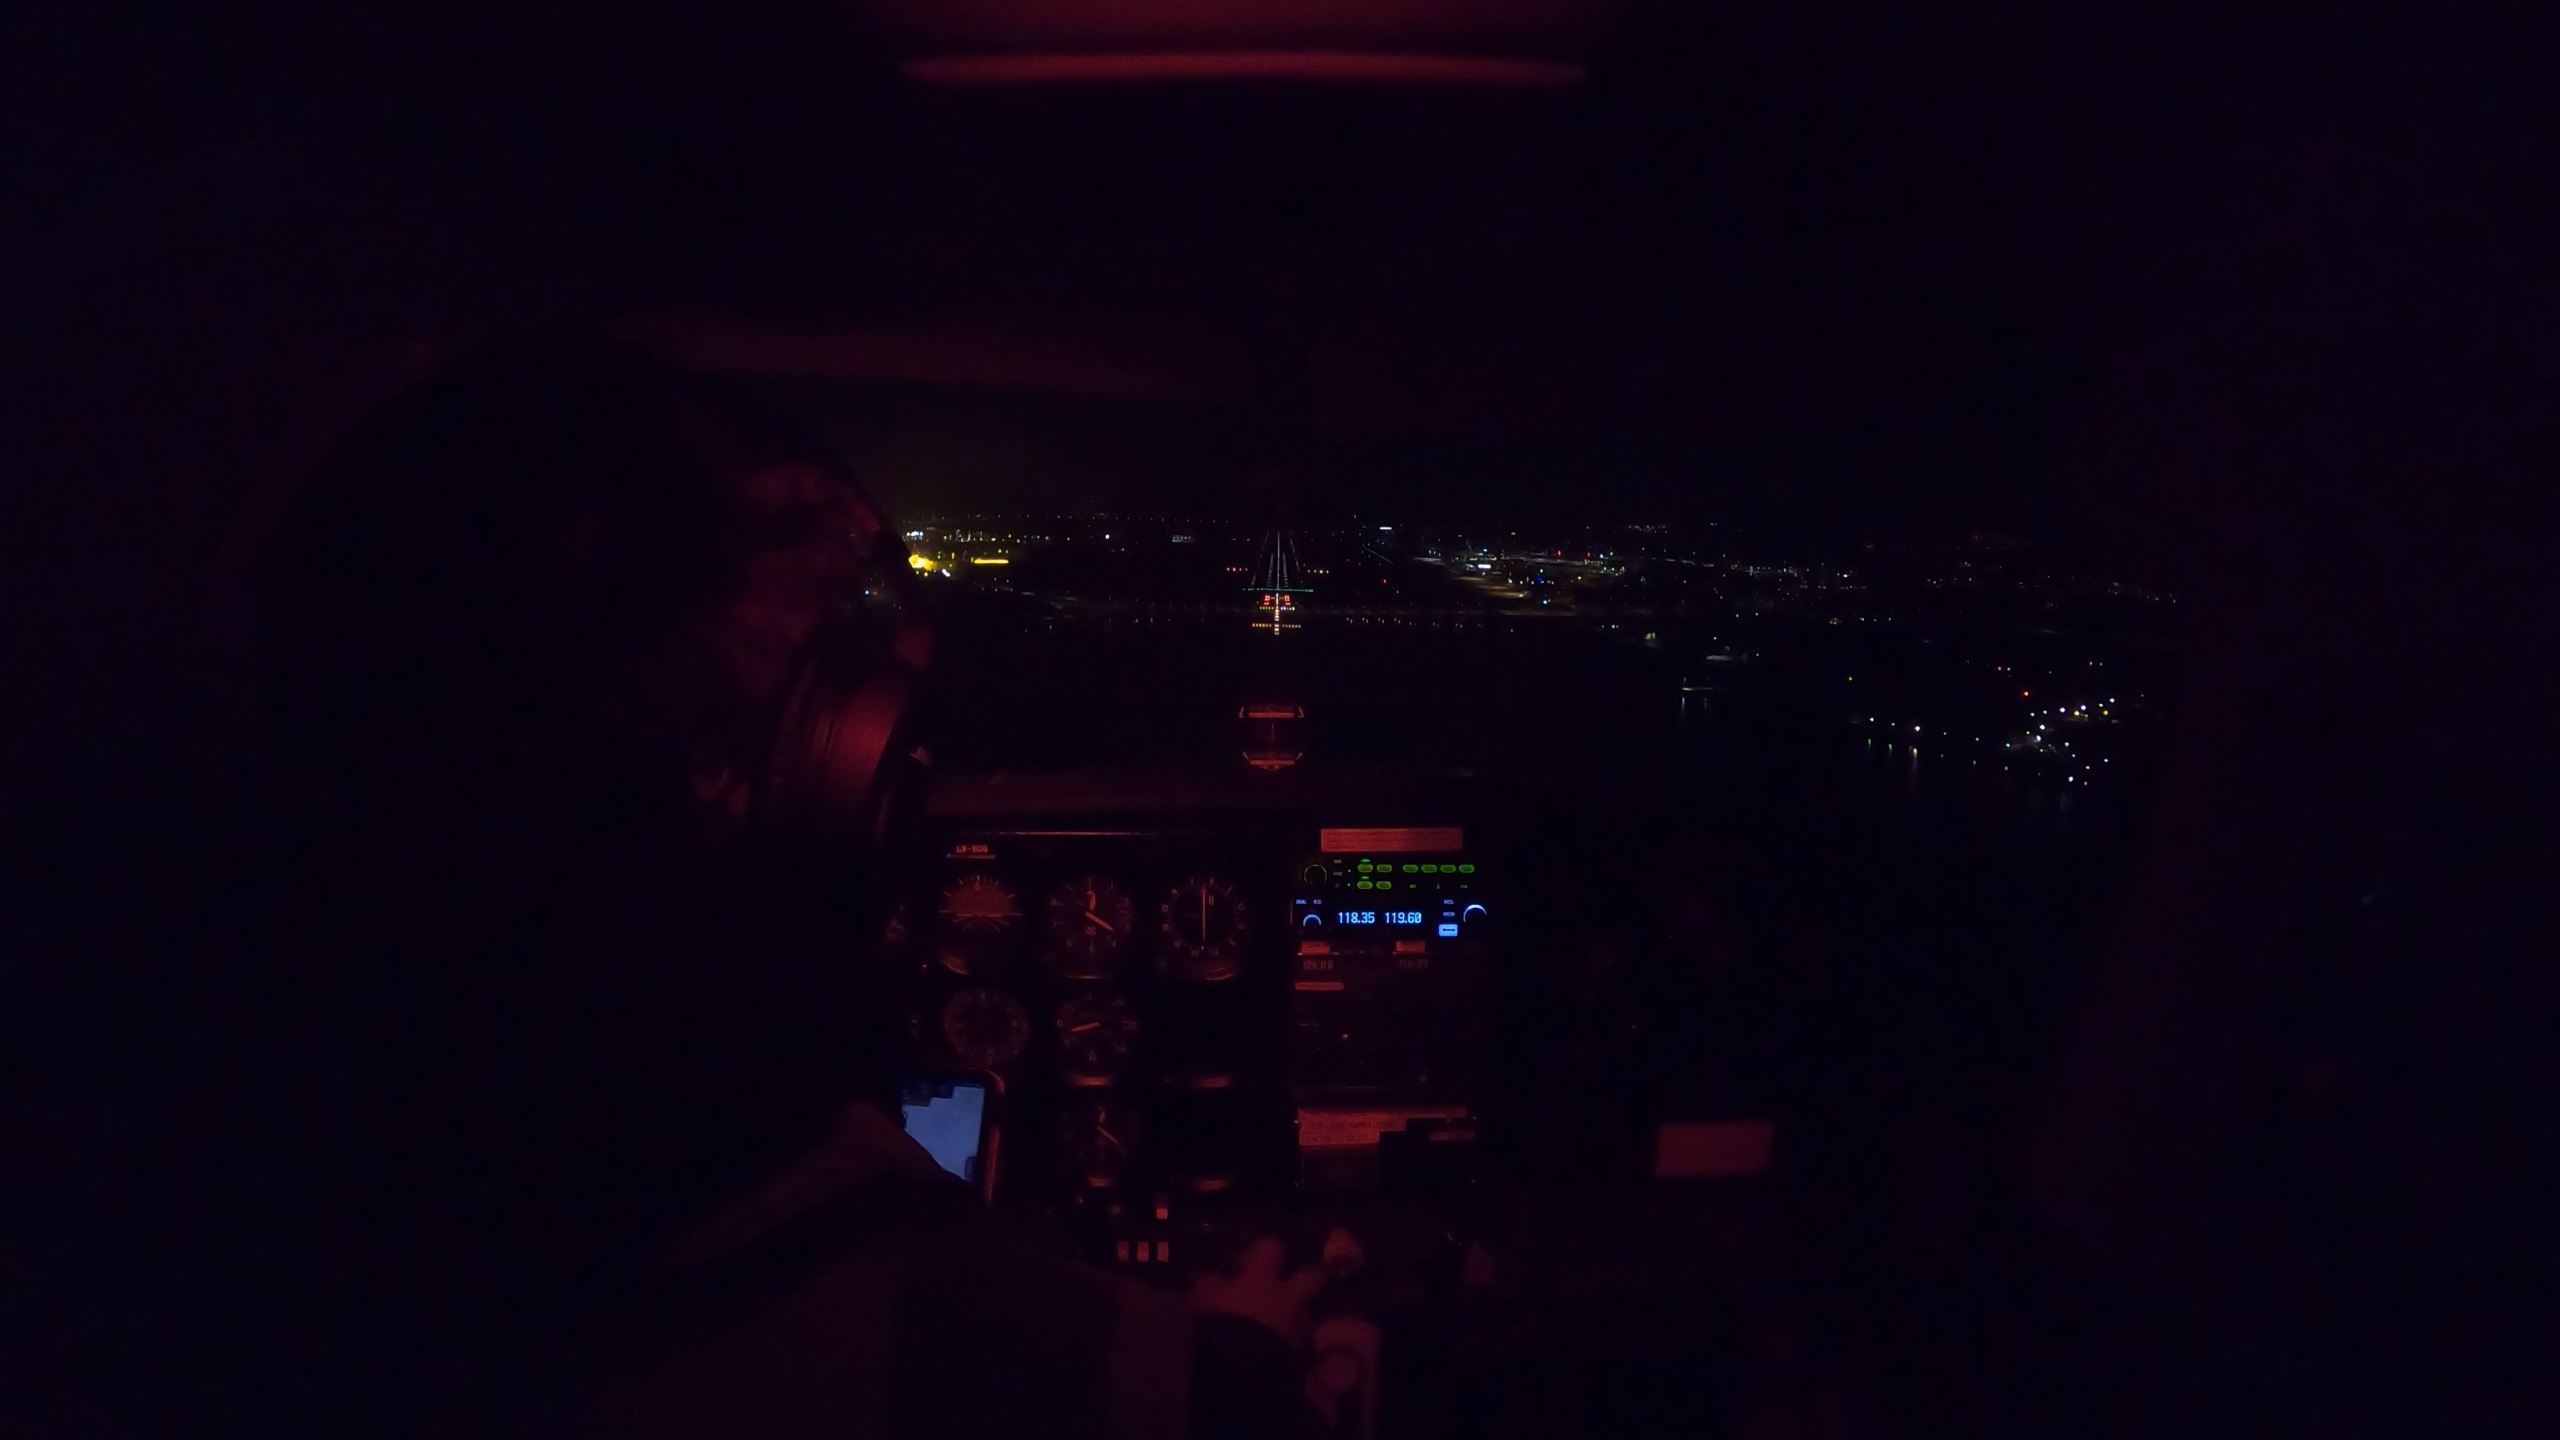 Me on my solo night landings in LN-HOG on final Runway 18, Sola